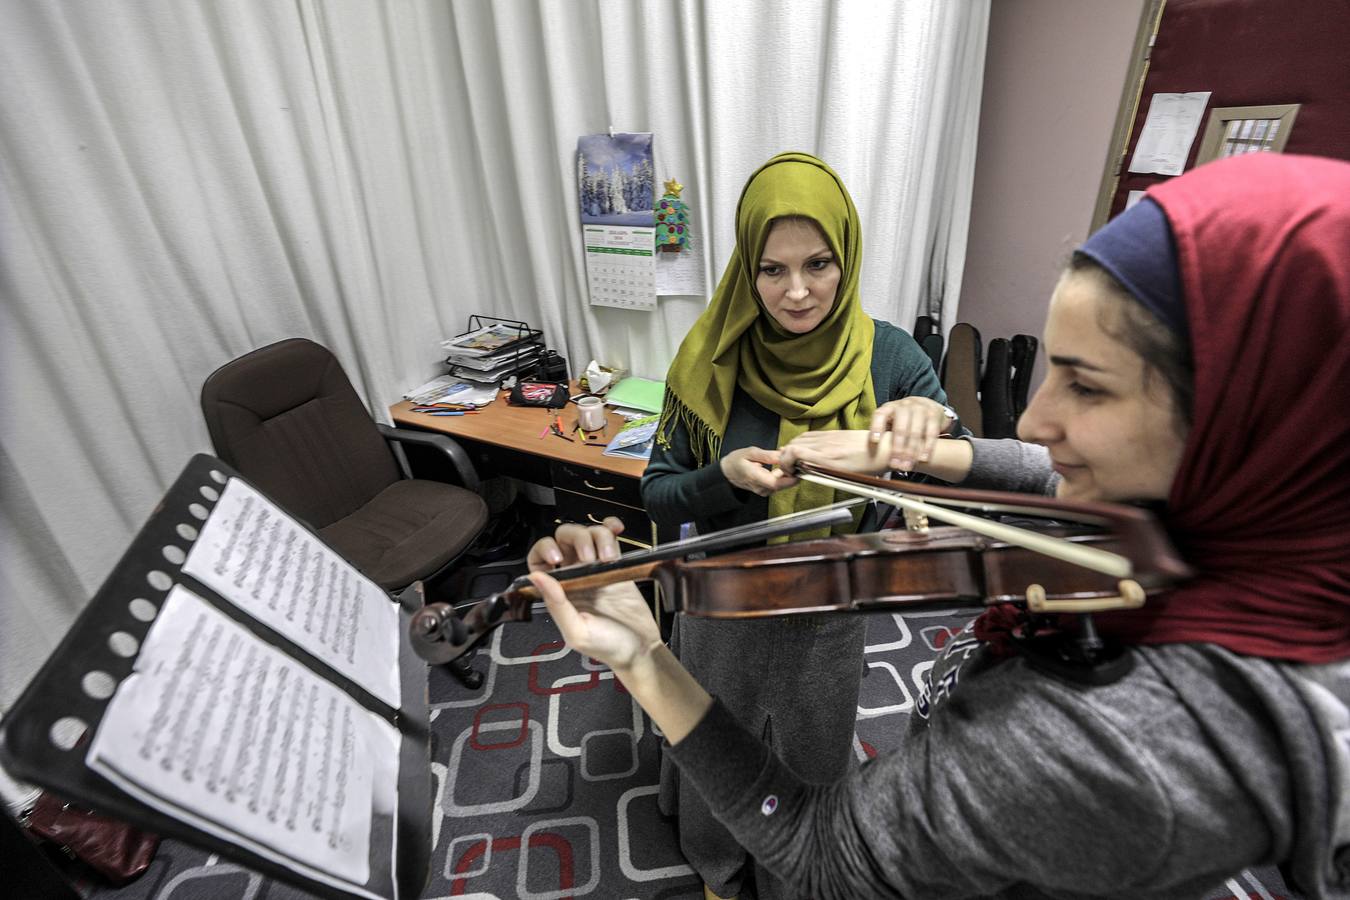 Estudiantes palestinos asisten a clases de música en el Conservatorio Nacional de Música Edward Said en la ciudad de Gaza Alrededor de 180 estudiantes palestinos, de entre seis y 16 años, se entrenan en el Conservatorio Nacional de Música Edward Said con cinco tipos de instrumentos musicales: Piano, kanoun, oud, guitarra y violín.